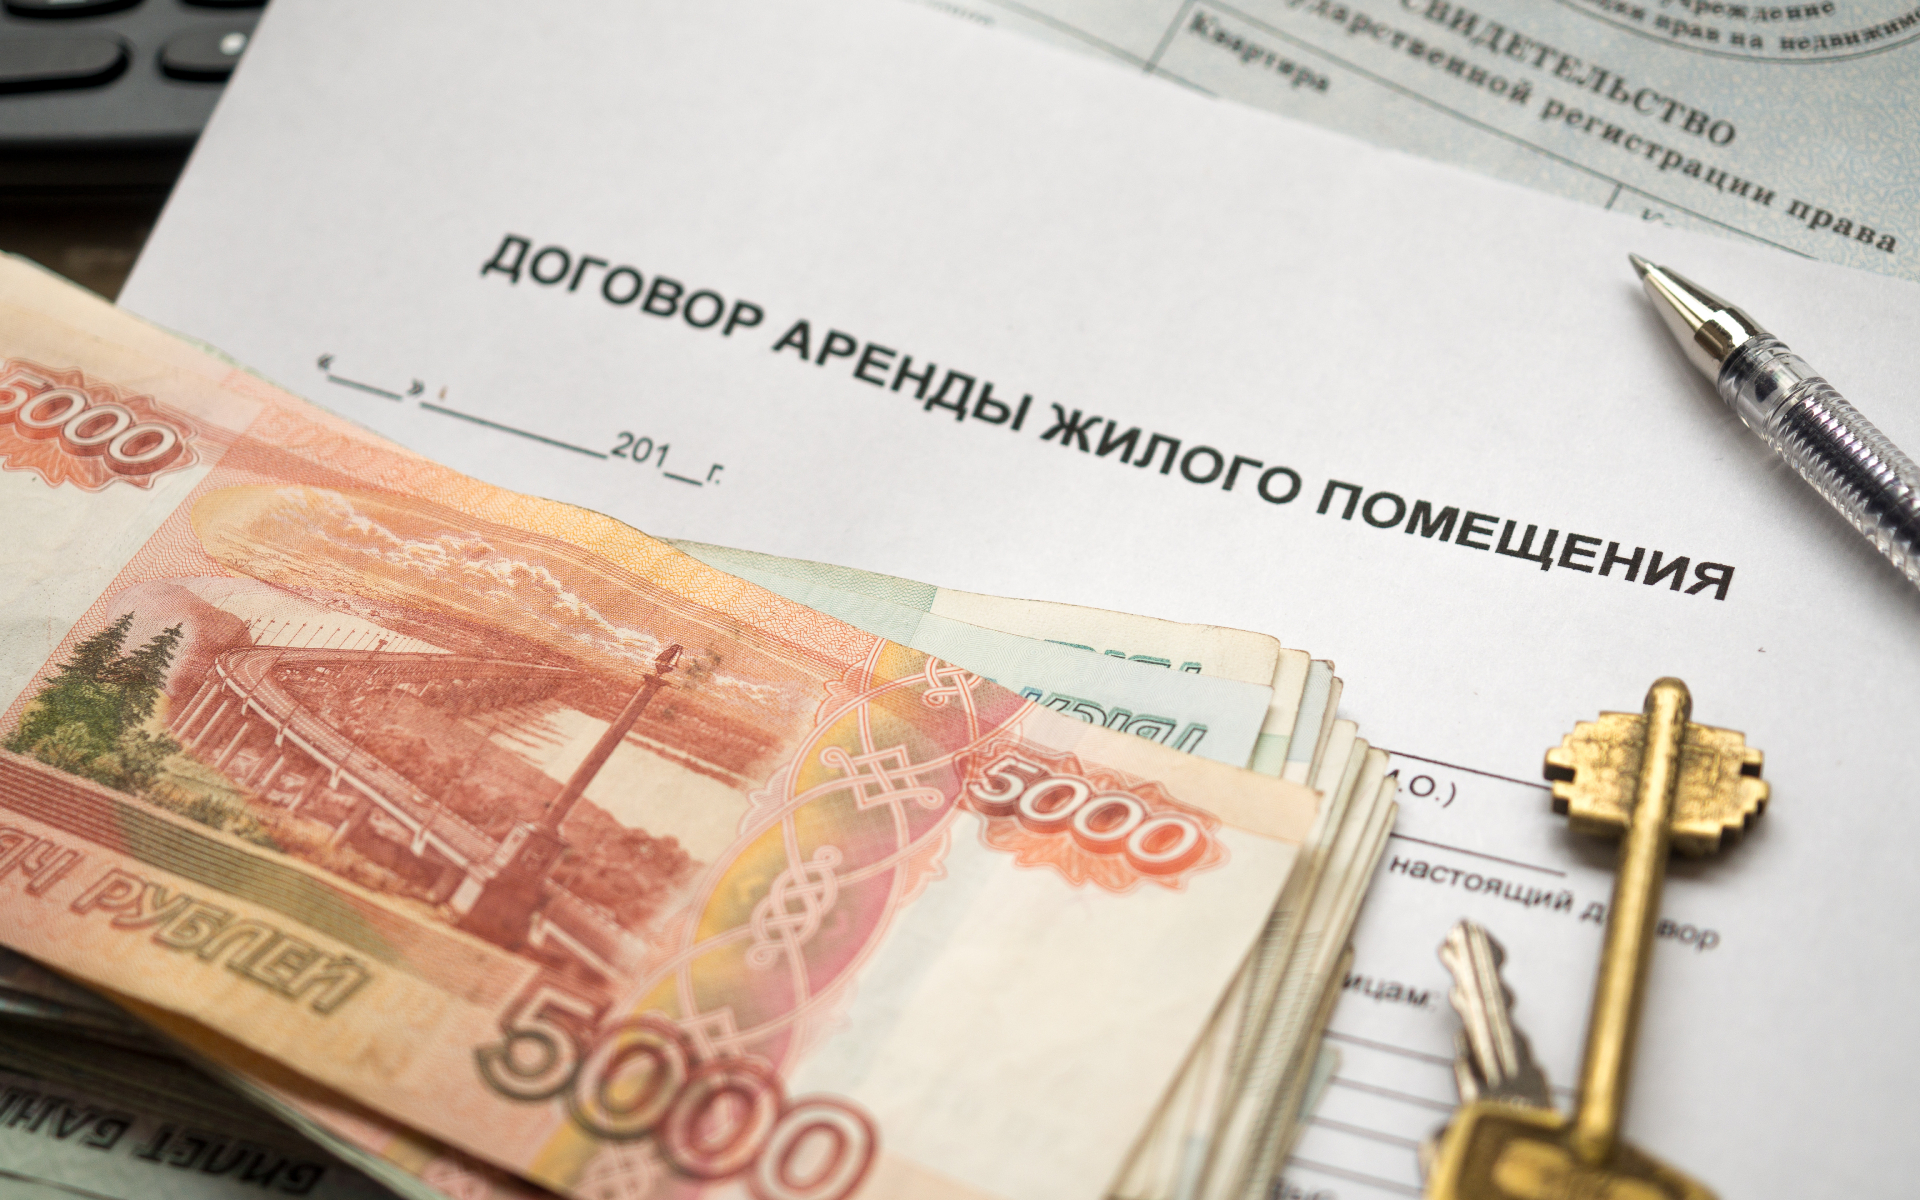 Стоимость месячной аренды жилья в Москве начинается от 26 тыс. руб.